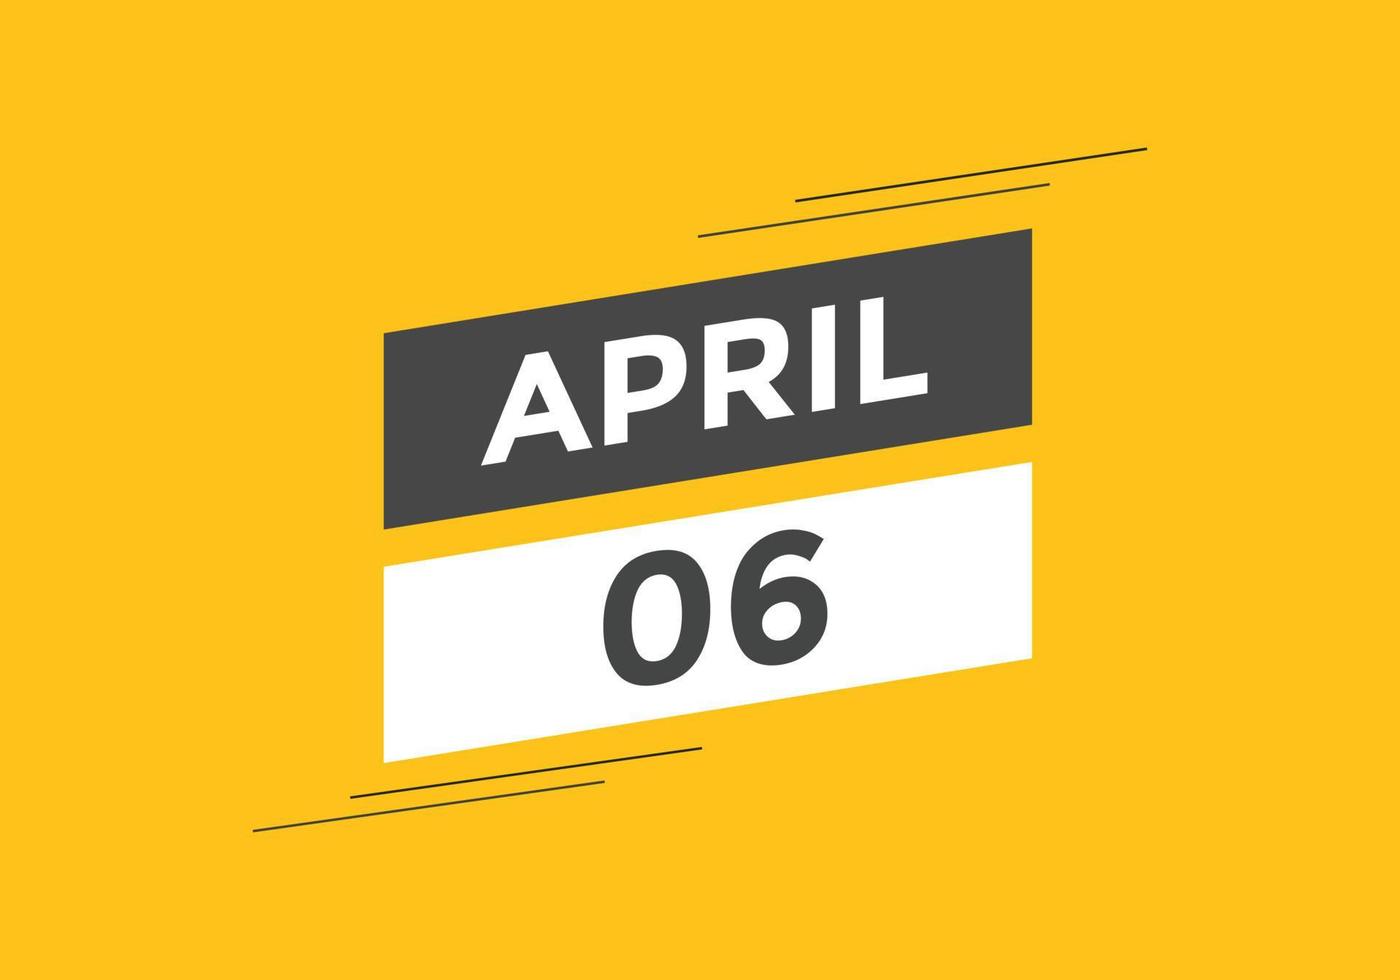 lembrete de calendário de 6 de abril. 6 de abril modelo de ícone de calendário diário. modelo de design de ícone de calendário 6 de abril. ilustração vetorial vetor